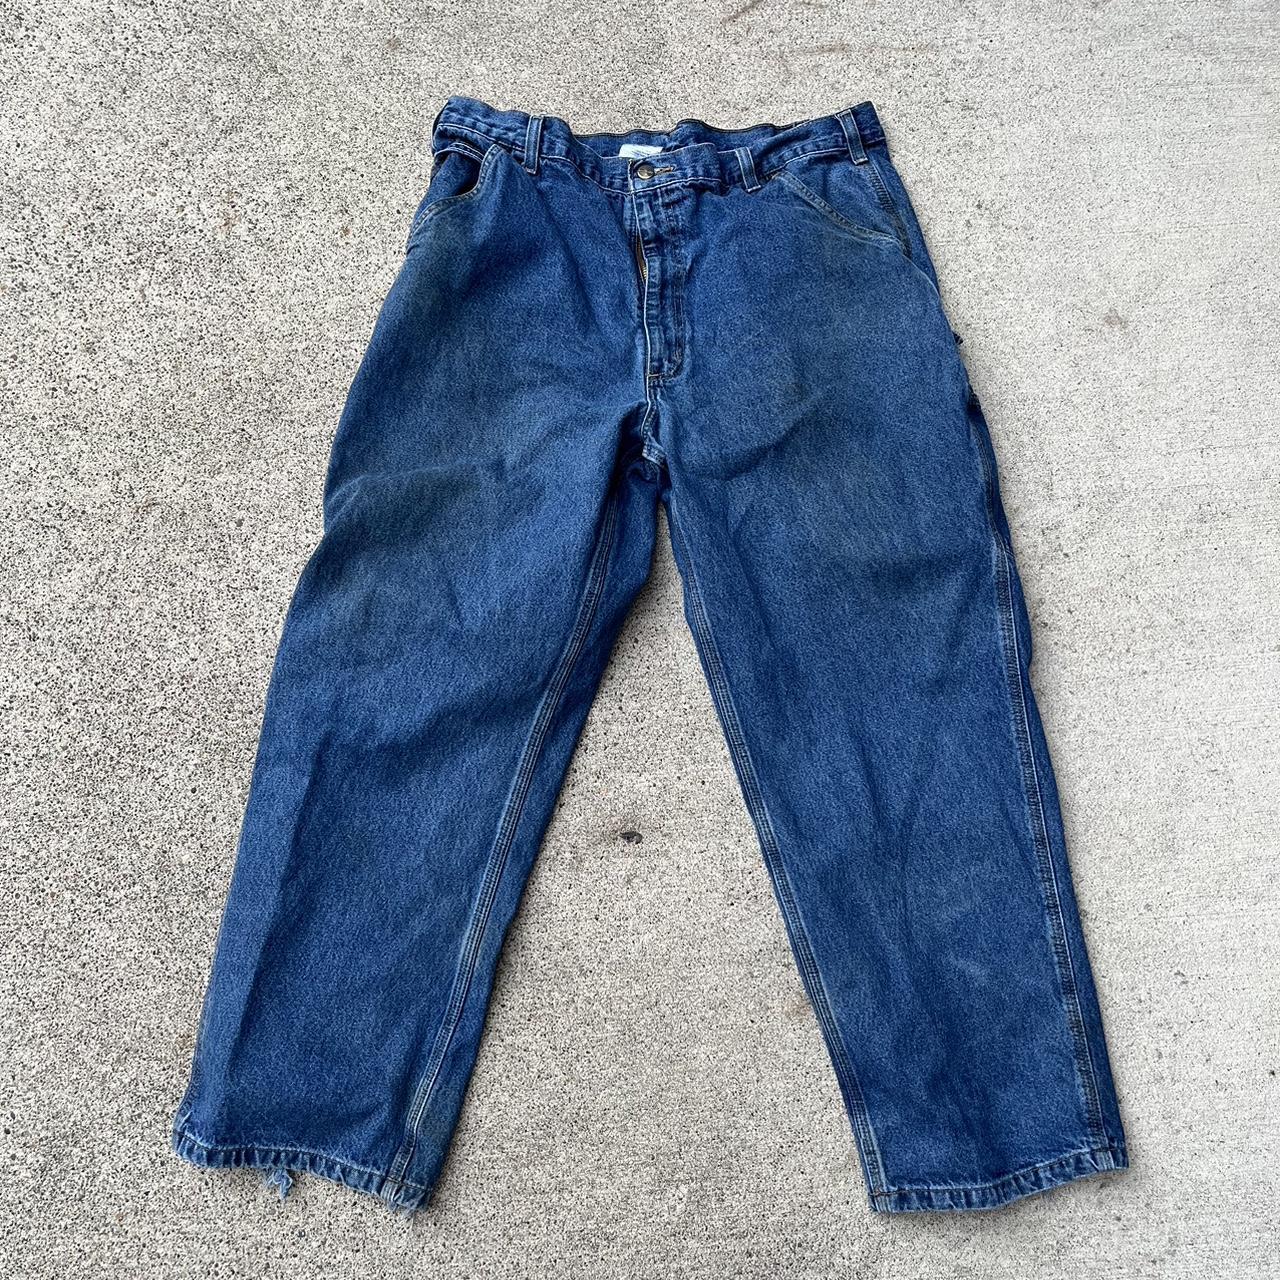 Carhartt carpenter jeans tagged 40x30 fit like 38.... - Depop